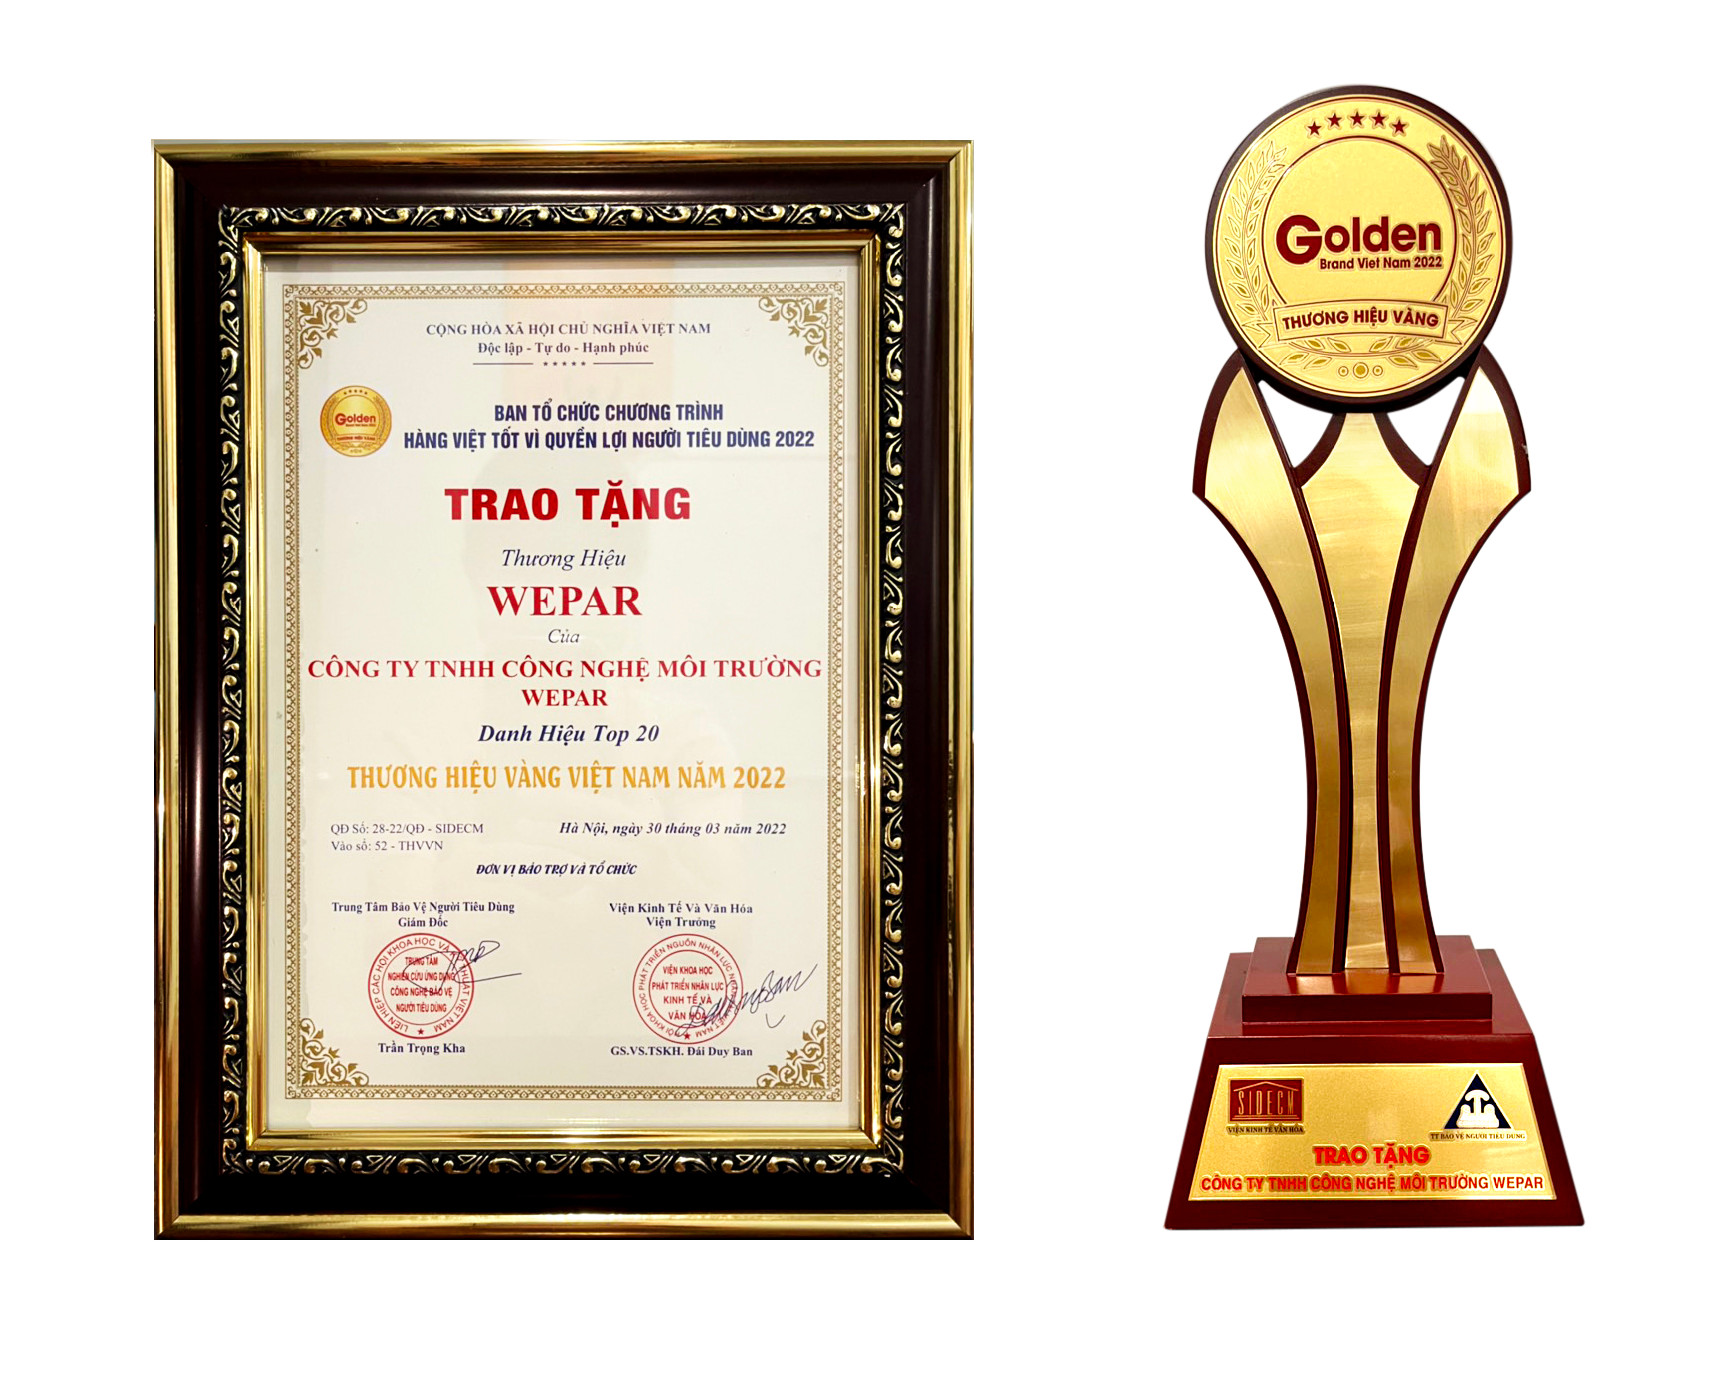 WEPAR – Tự hào Top 20 Thương hiệu Vàng Việt Nam